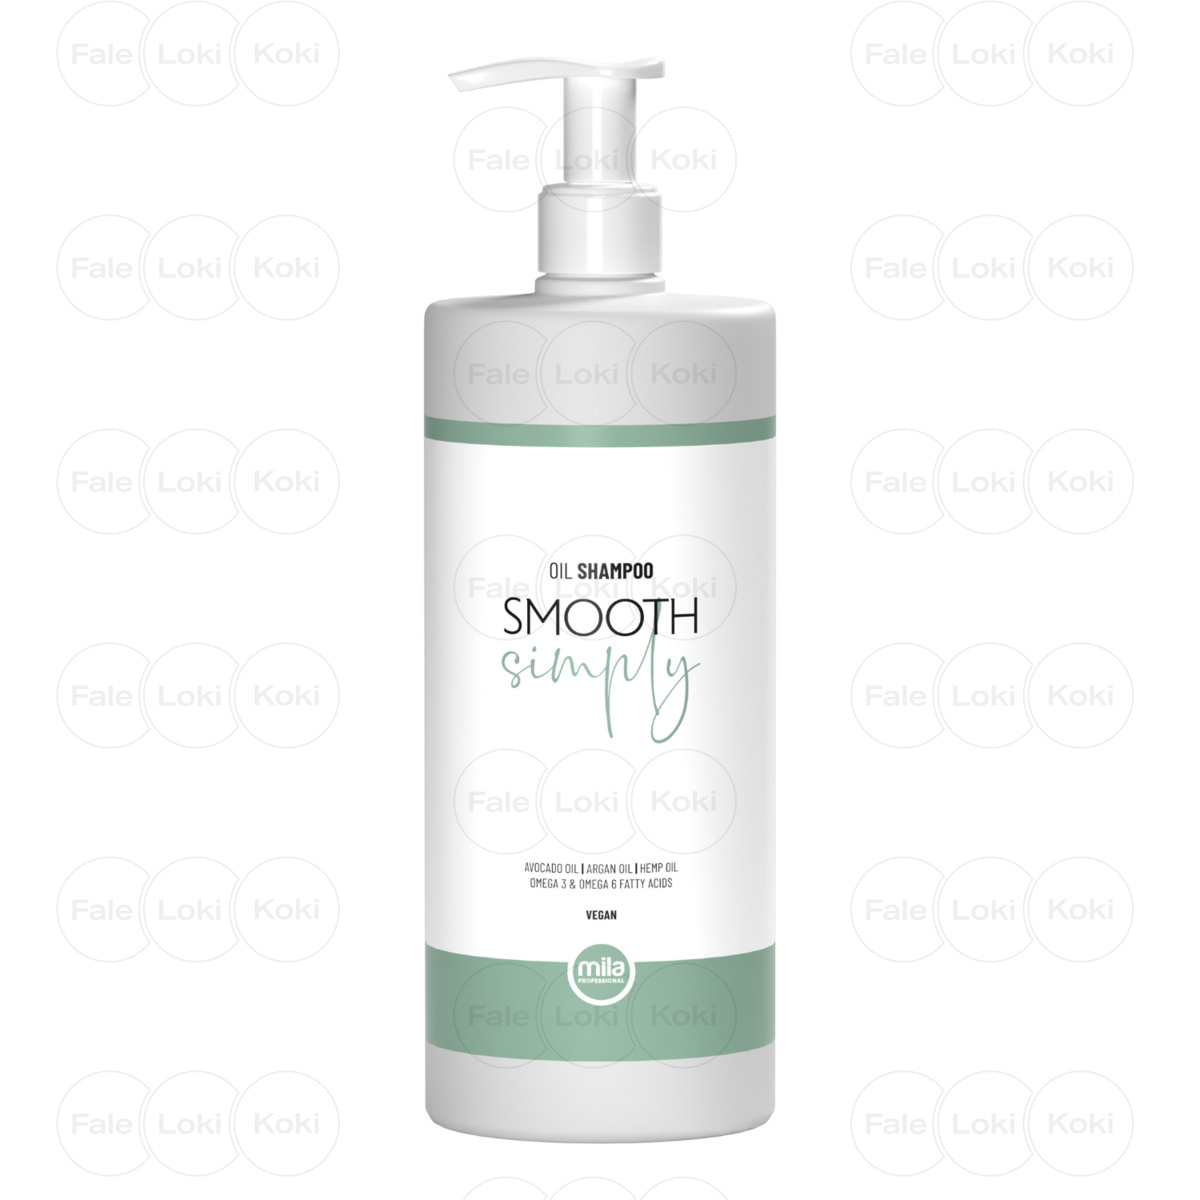 MILA PROFESSIONAL SIMPLY szampon wygładzający SMOOTH 950 ml